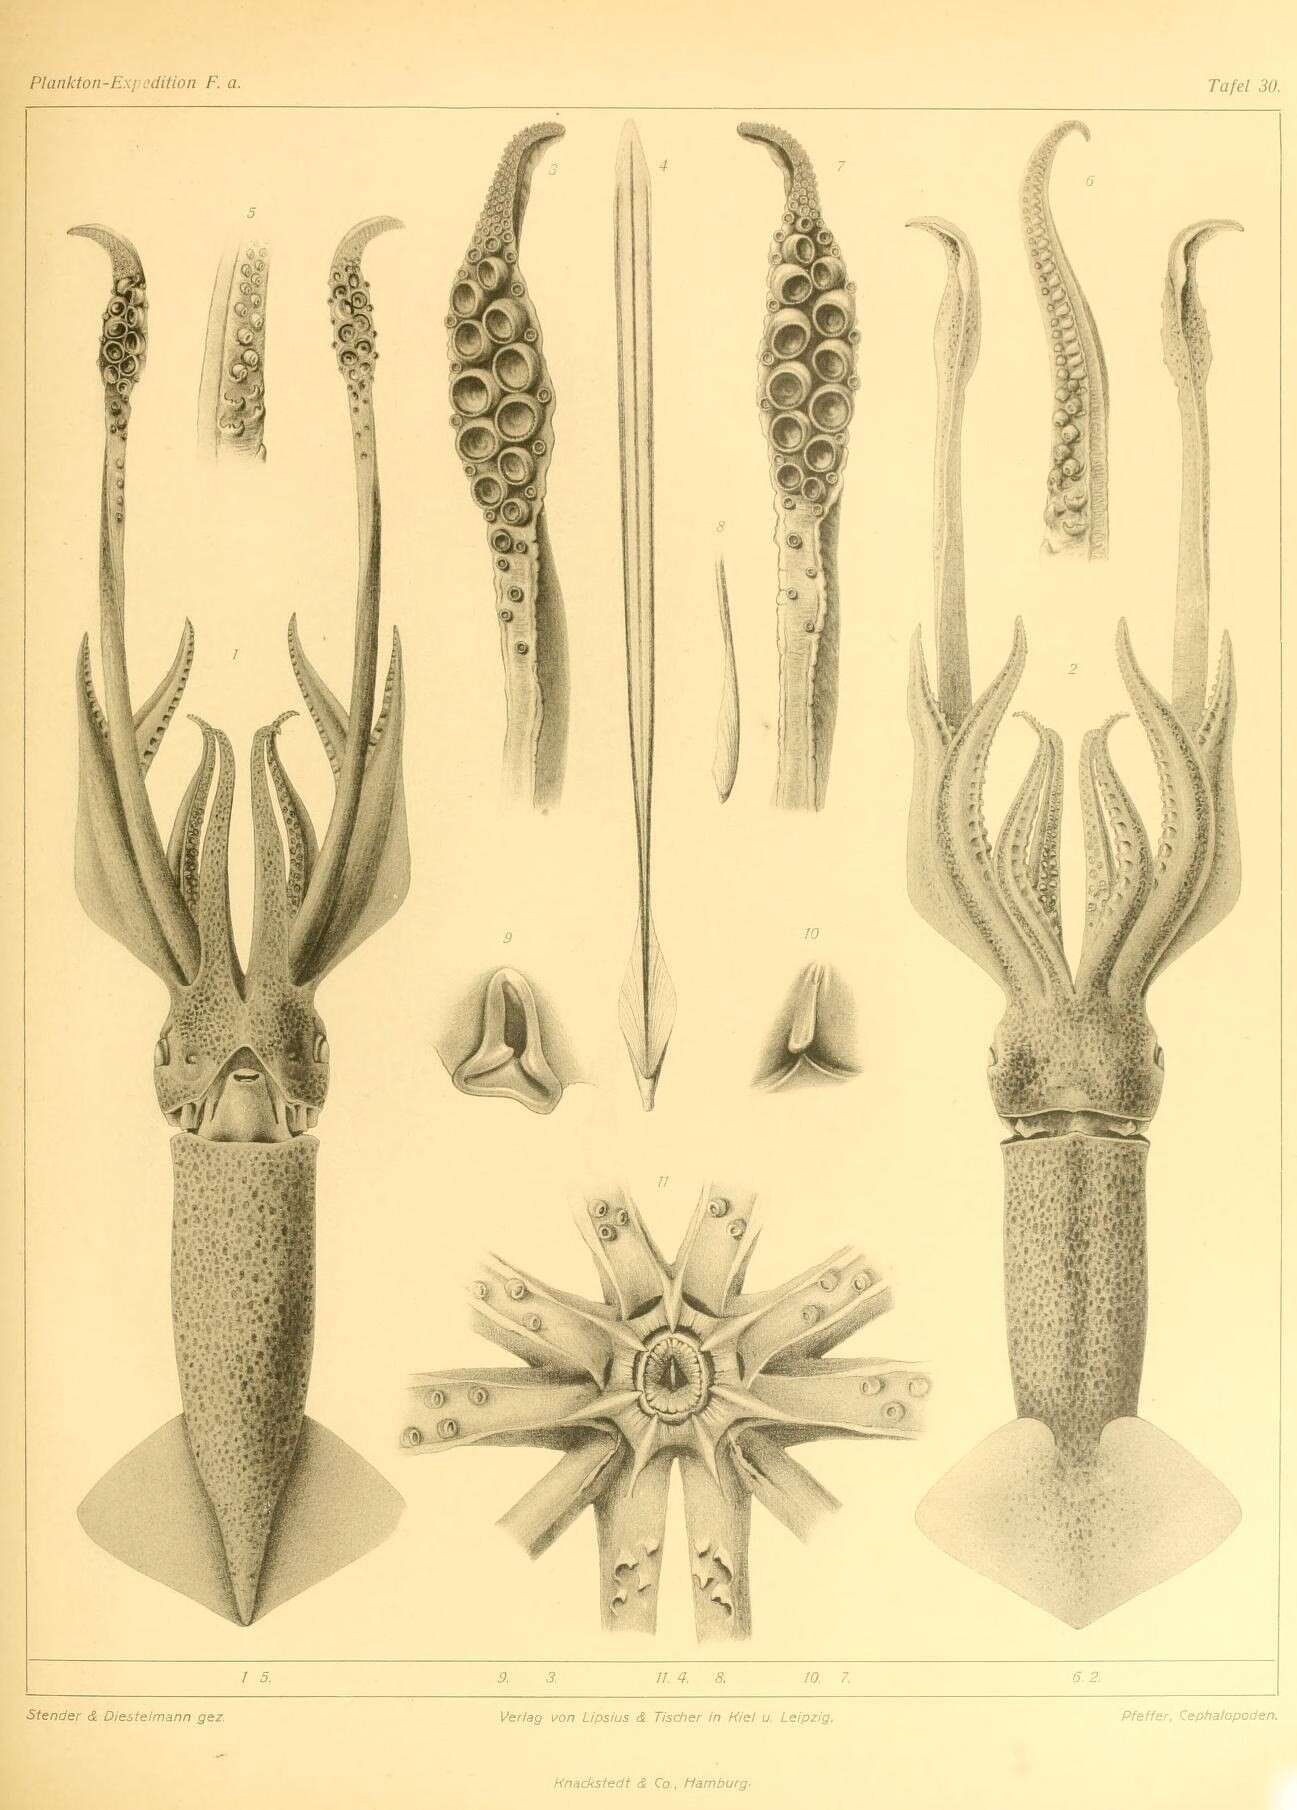 Image of Todaropsis Girard 1890